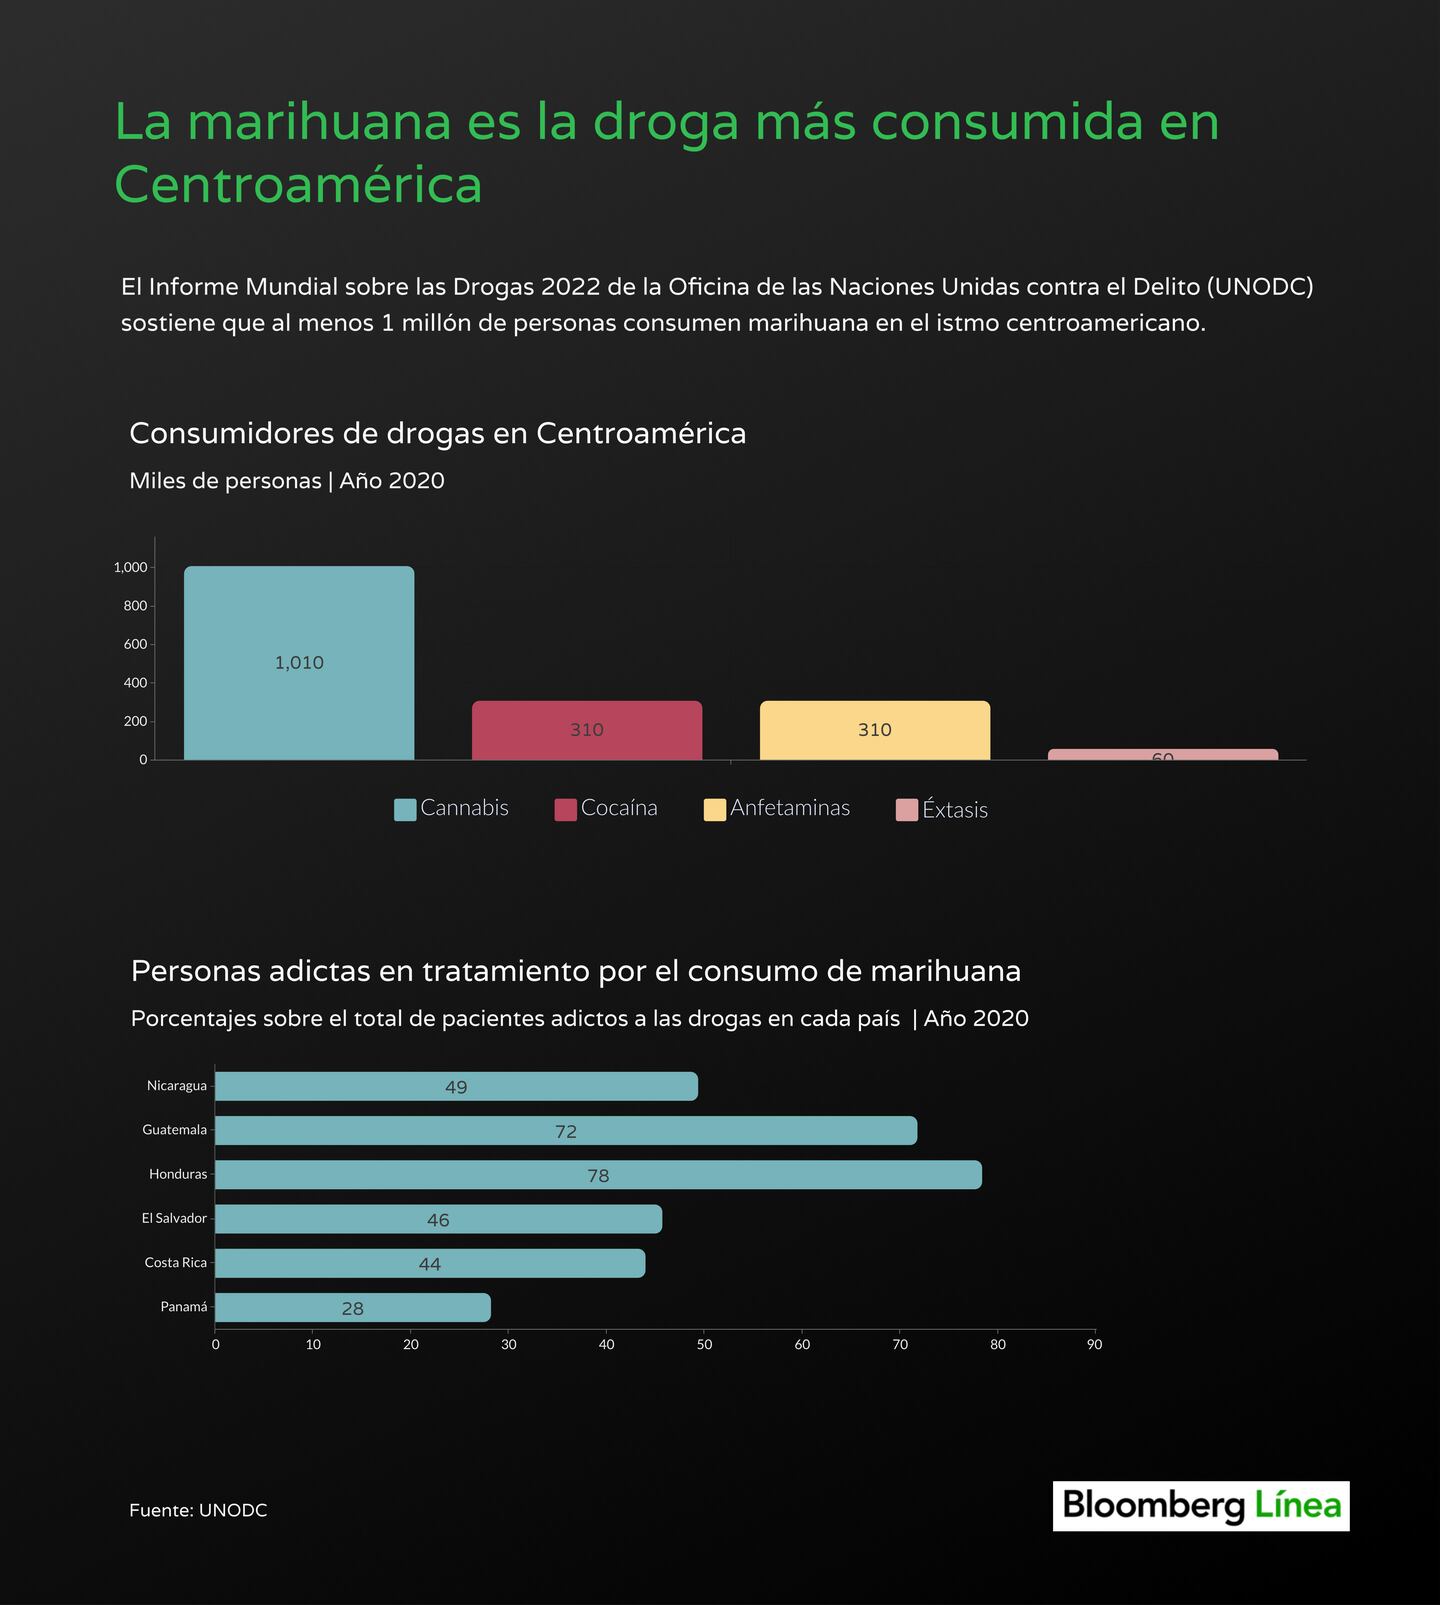 Consumidores de marihuana y drogas en Centroamérica, según un estudio de UNODC publicado en 2022.dfd